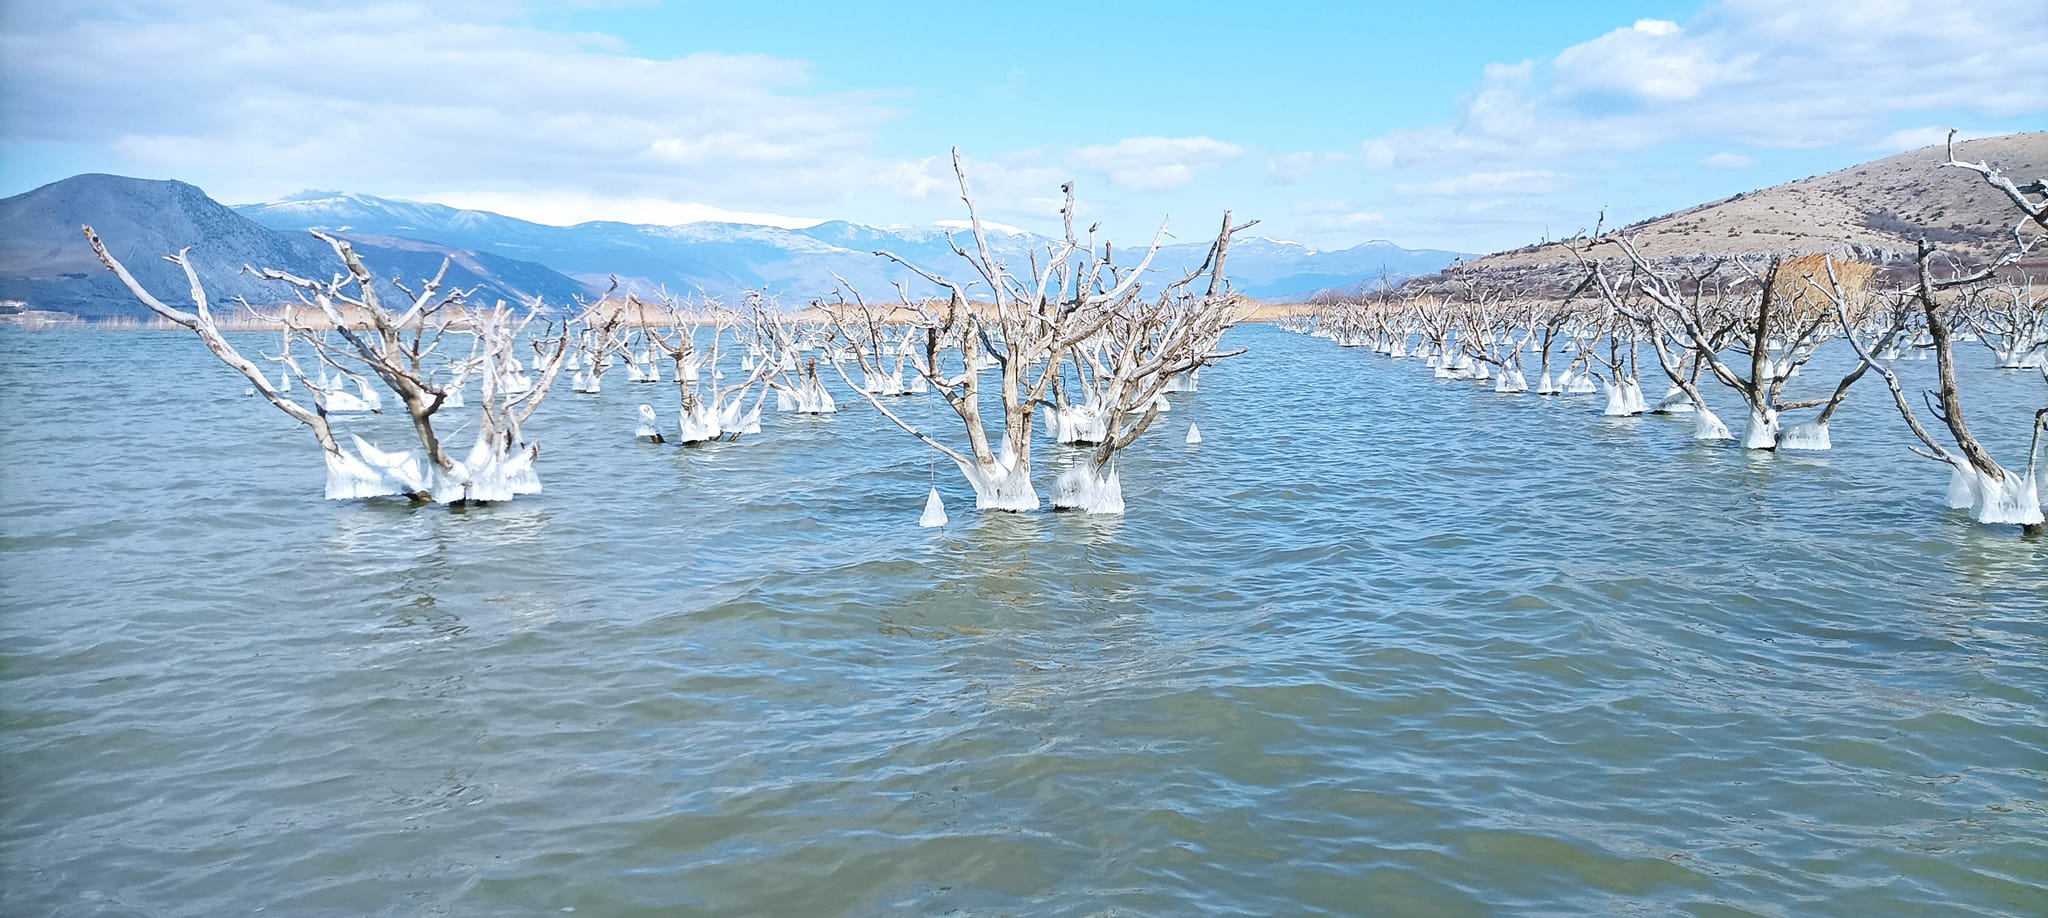 Φλώρινα: H λίμνη Βεγορίτιδα που μπορείς να... ψαρέψεις ροδάκινα! ΦΩΤΟ